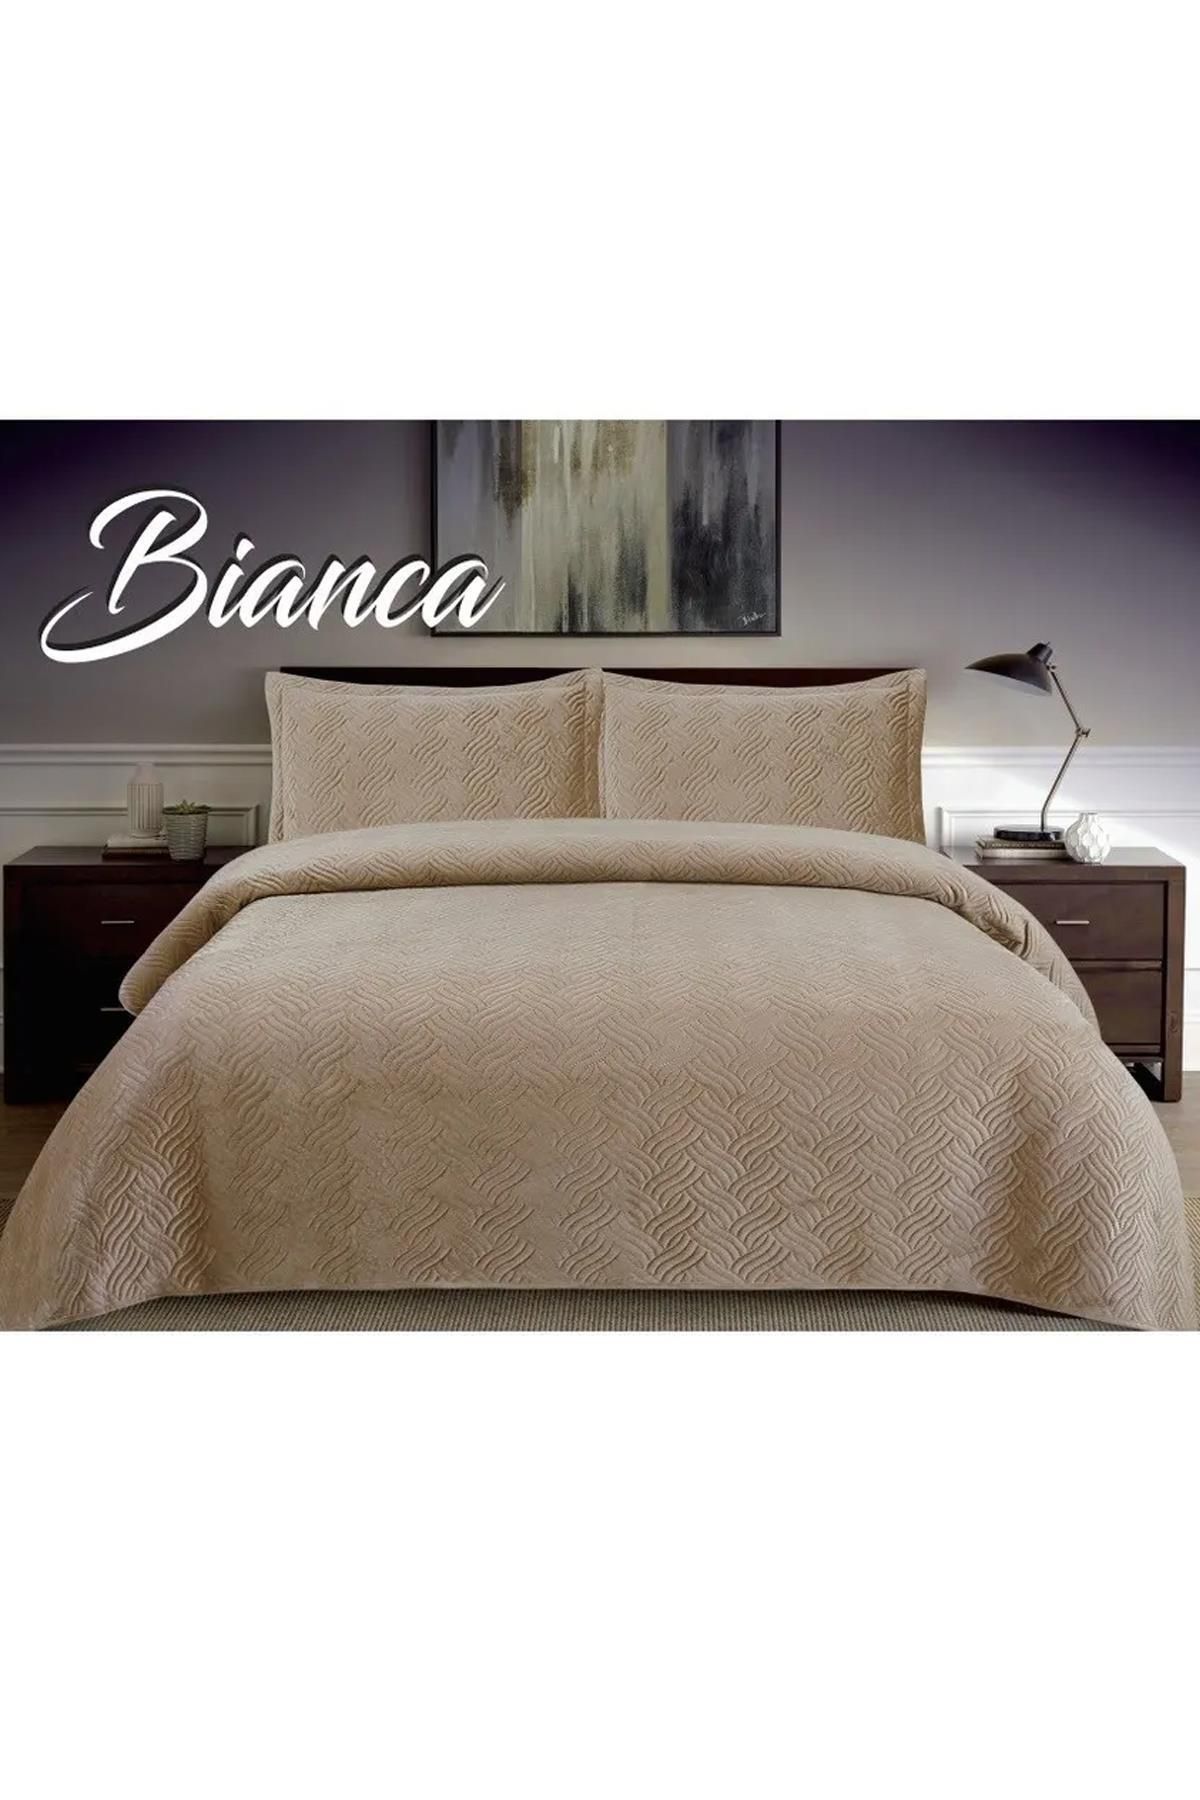 Bianca Tek Kişilik Kadife Yatak Örtüsü Takımı - Volanlı Yastık Kılıfı